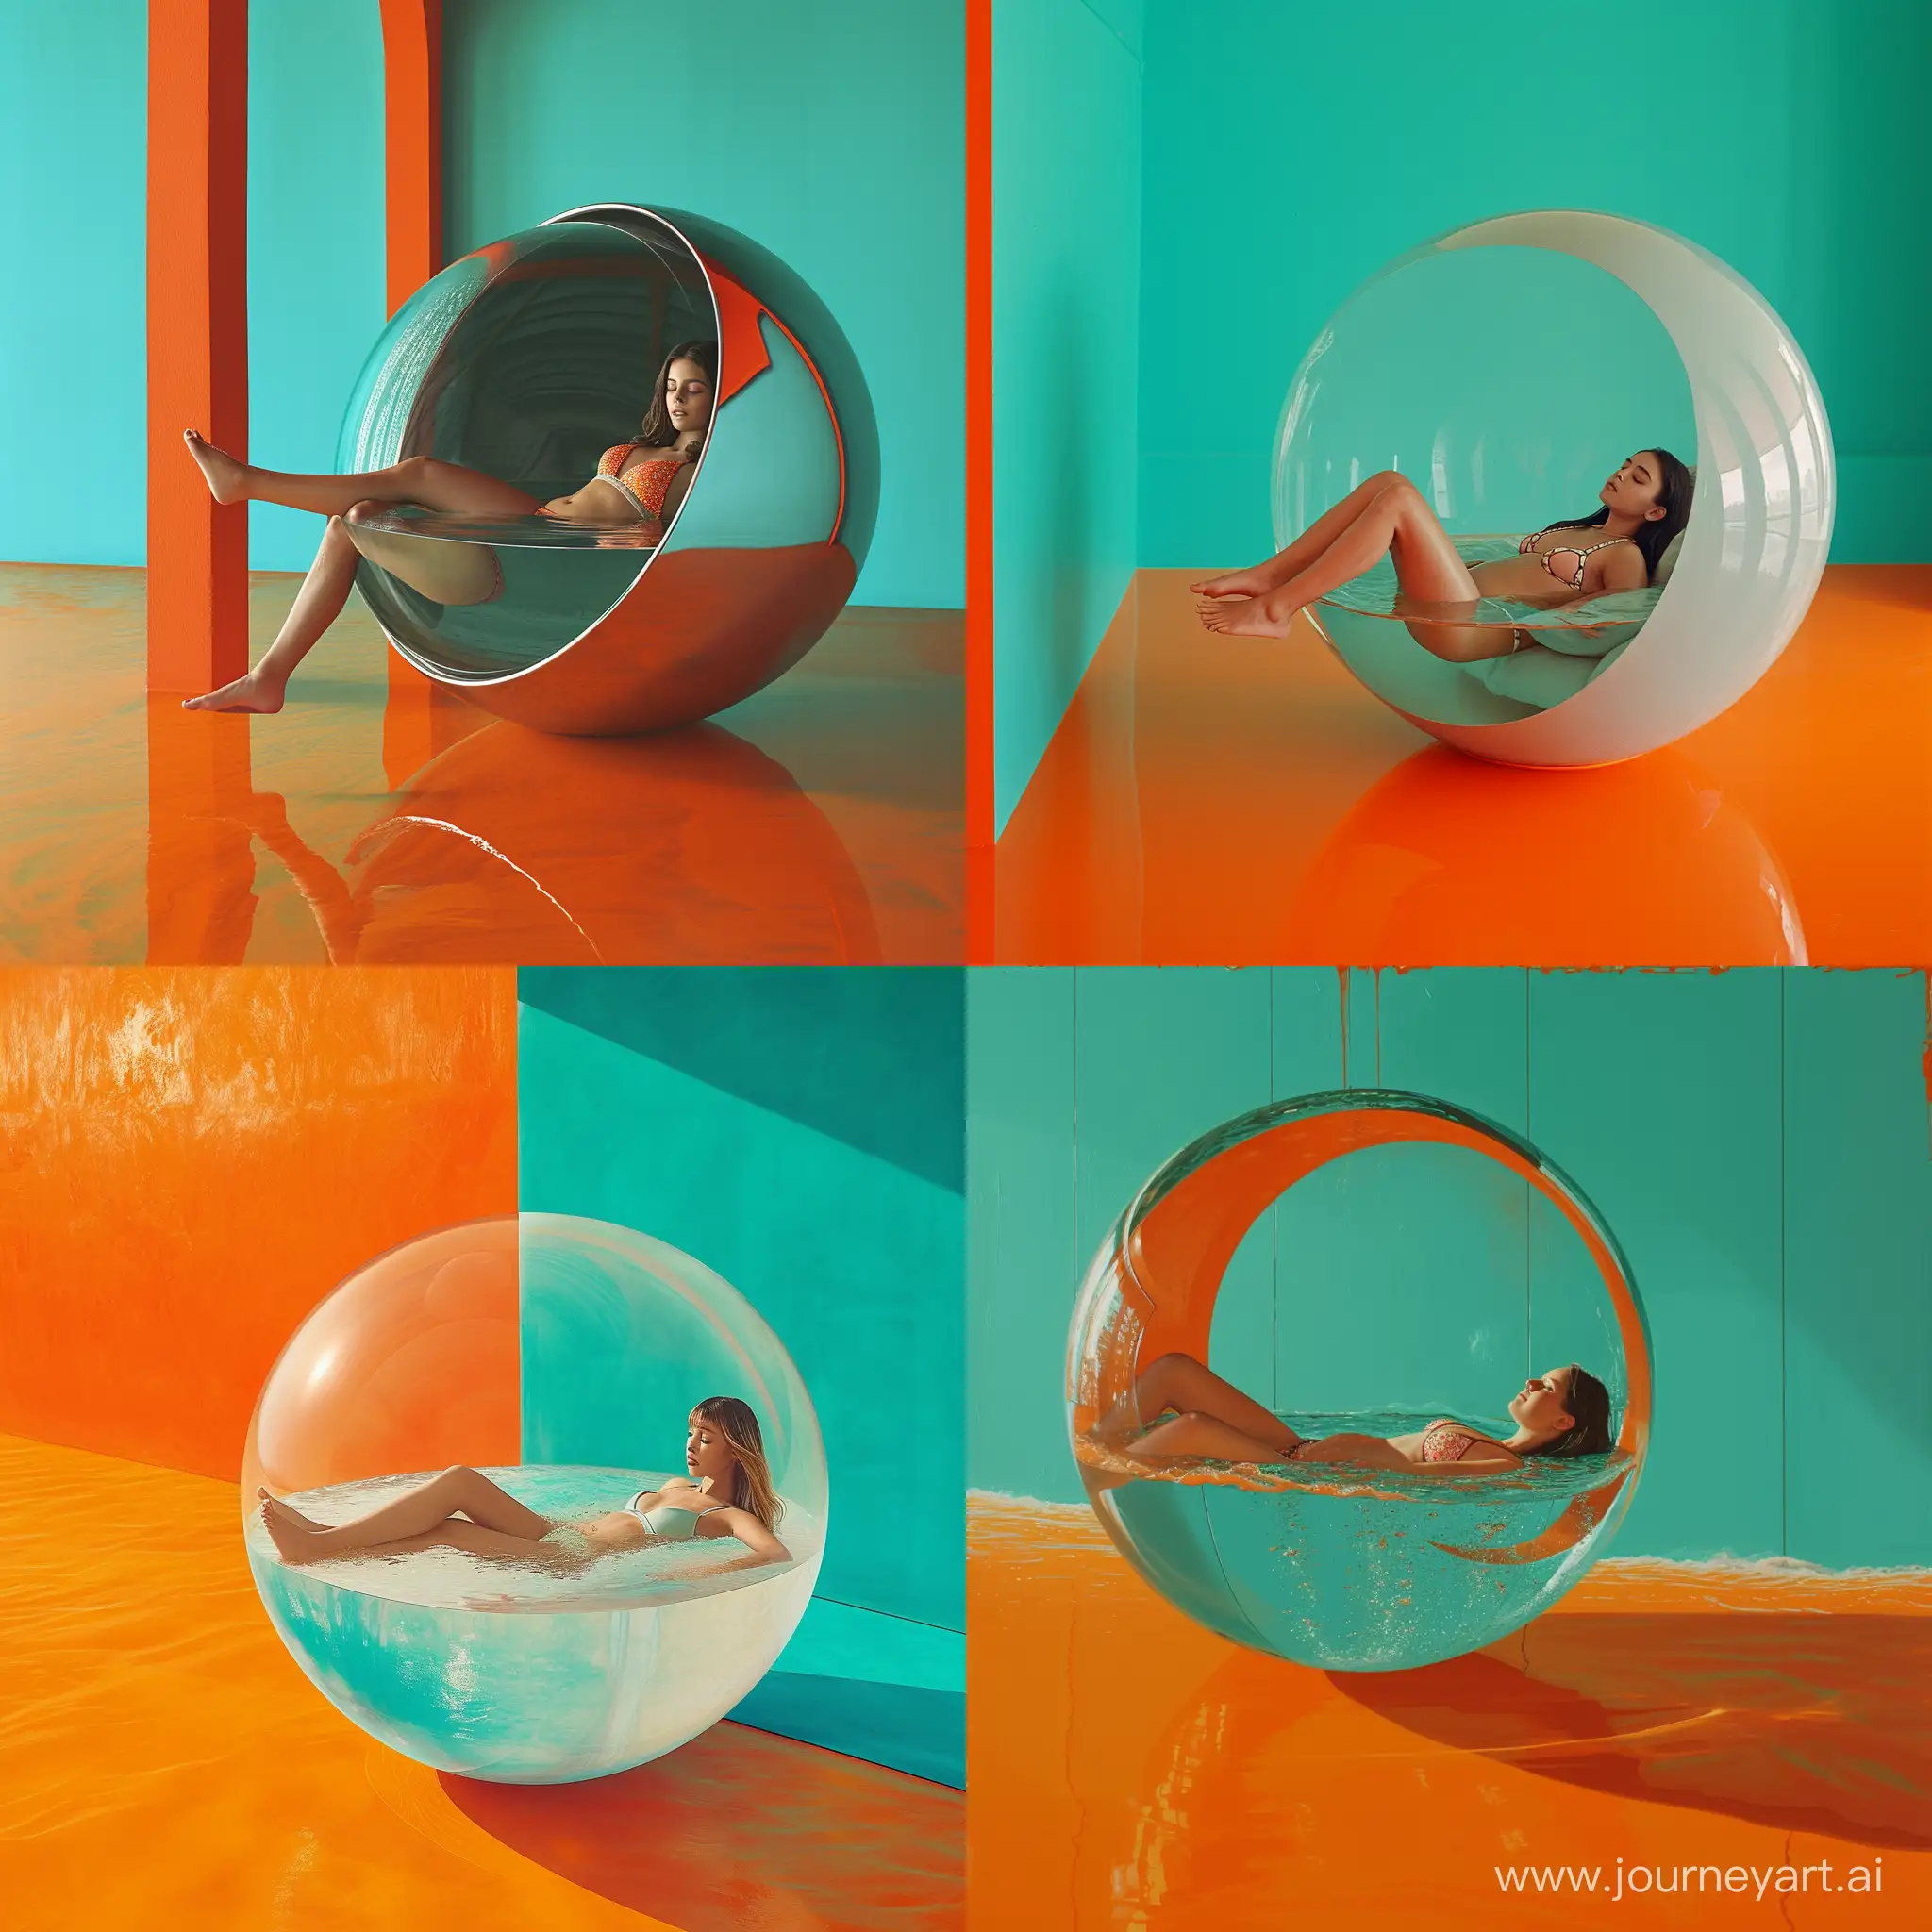 девушка лежит в сфере наполненной на половину водой, она в купальнике, тело расслаблено, сфера в комнате с оранжевым полом и бирюзовыми стенами